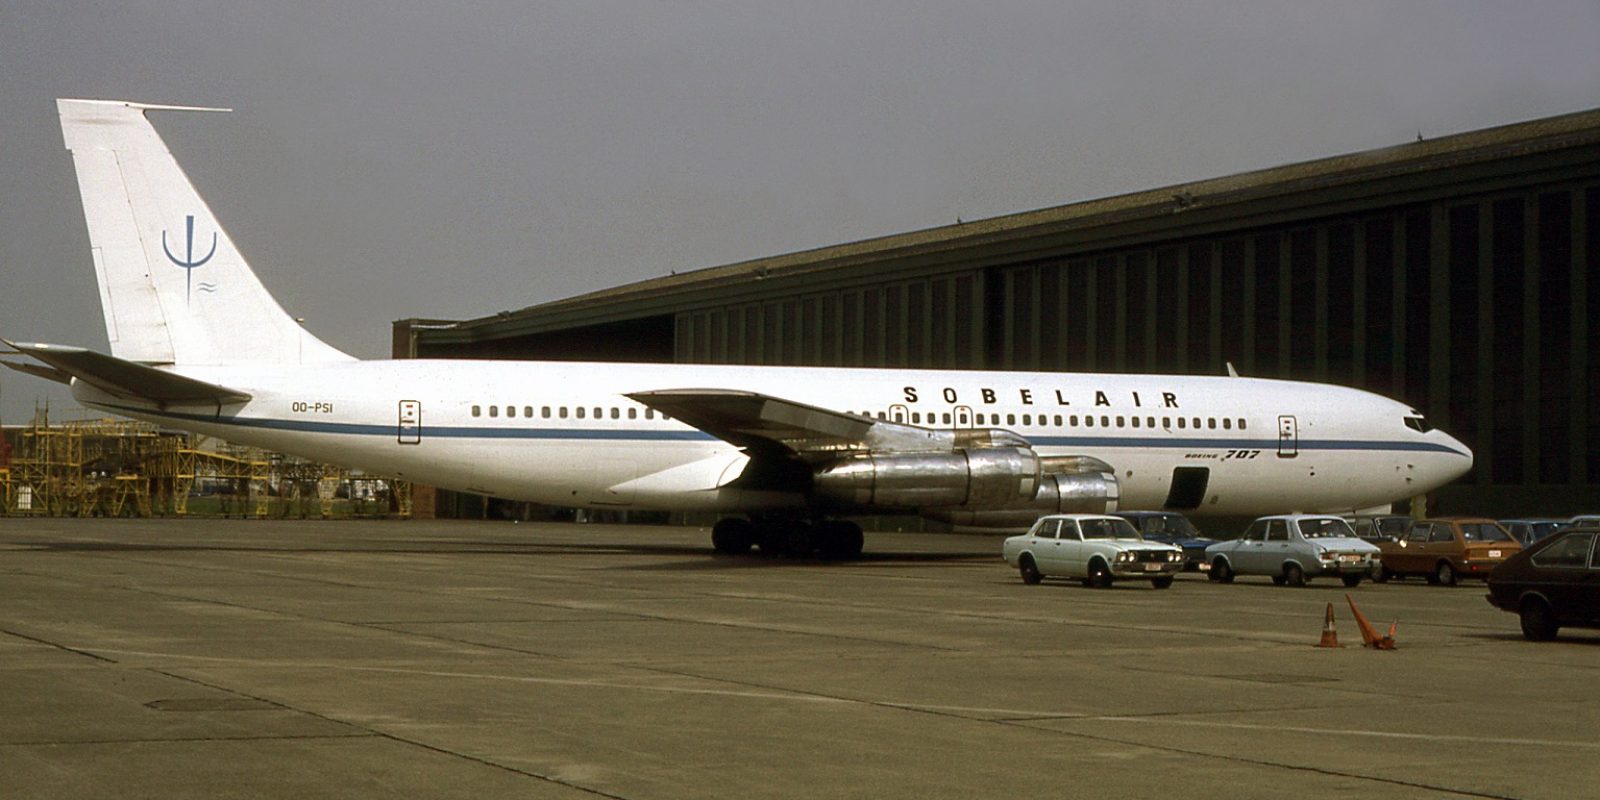 Le Boeing 707 (avec son immatriculation correcte OO-PSI) n’effectuera quasi pas de vols pour la CER. Photographié en mars 1979, il arbore le sigle « psi » de la CER (rappelant le projet « Planet Survival International ») sur la dérive, et les titres « Sobelair » sur le fuselage.